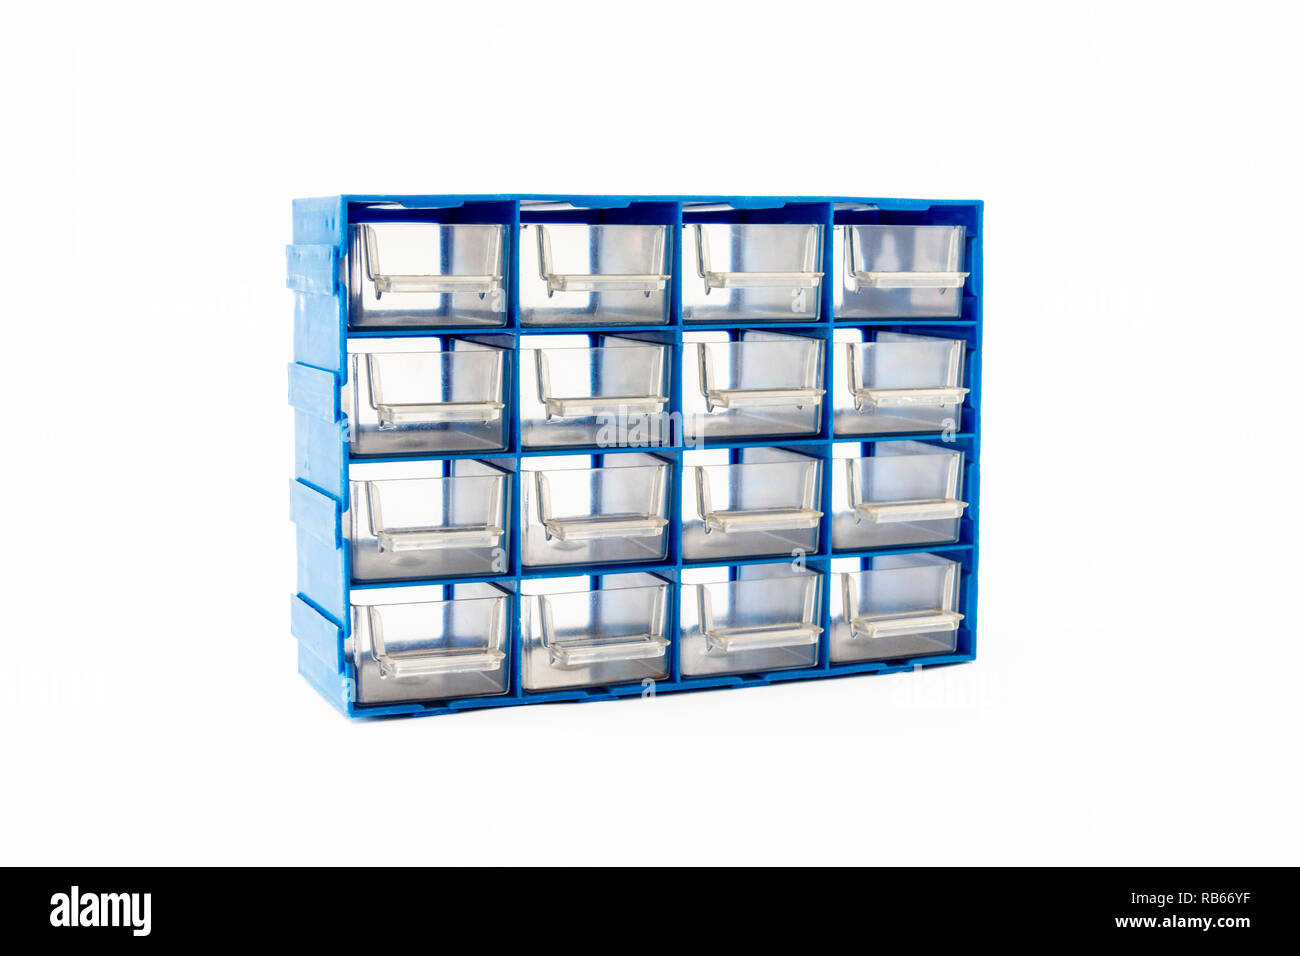 Un 16-tiroir plastique bleu le meuble de rangement avec tiroirs transparents isolé sur fond blanc Banque D'Images